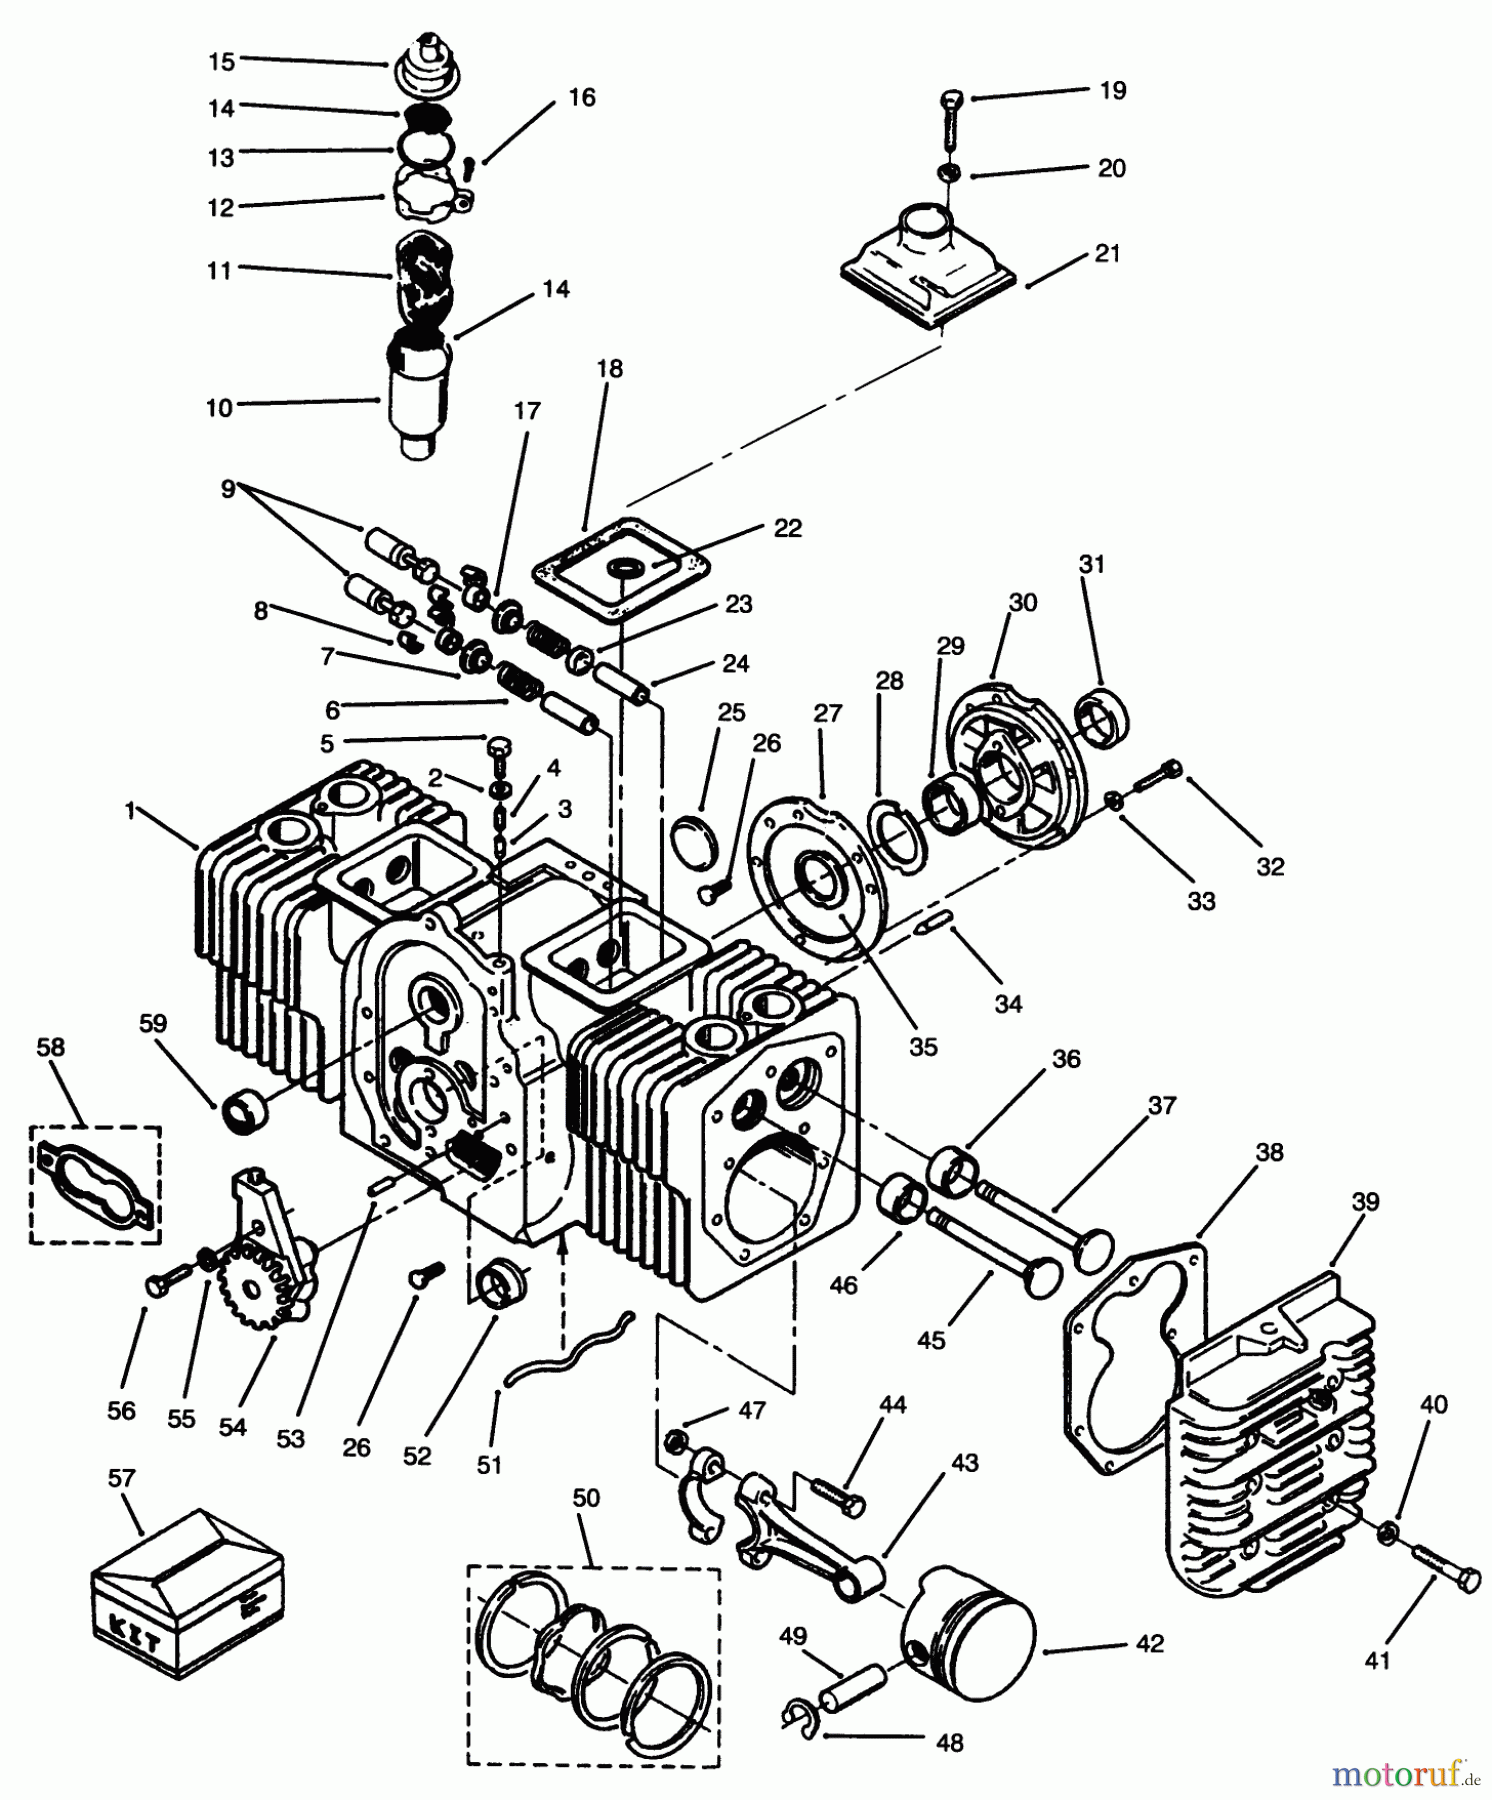  Toro Neu Mowers, Lawn & Garden Tractor Seite 1 73501 (520-H) - Toro 520-H Garden Tractor, 1995 (59002947-59999999) ENGINE CYLINDER BLOCK